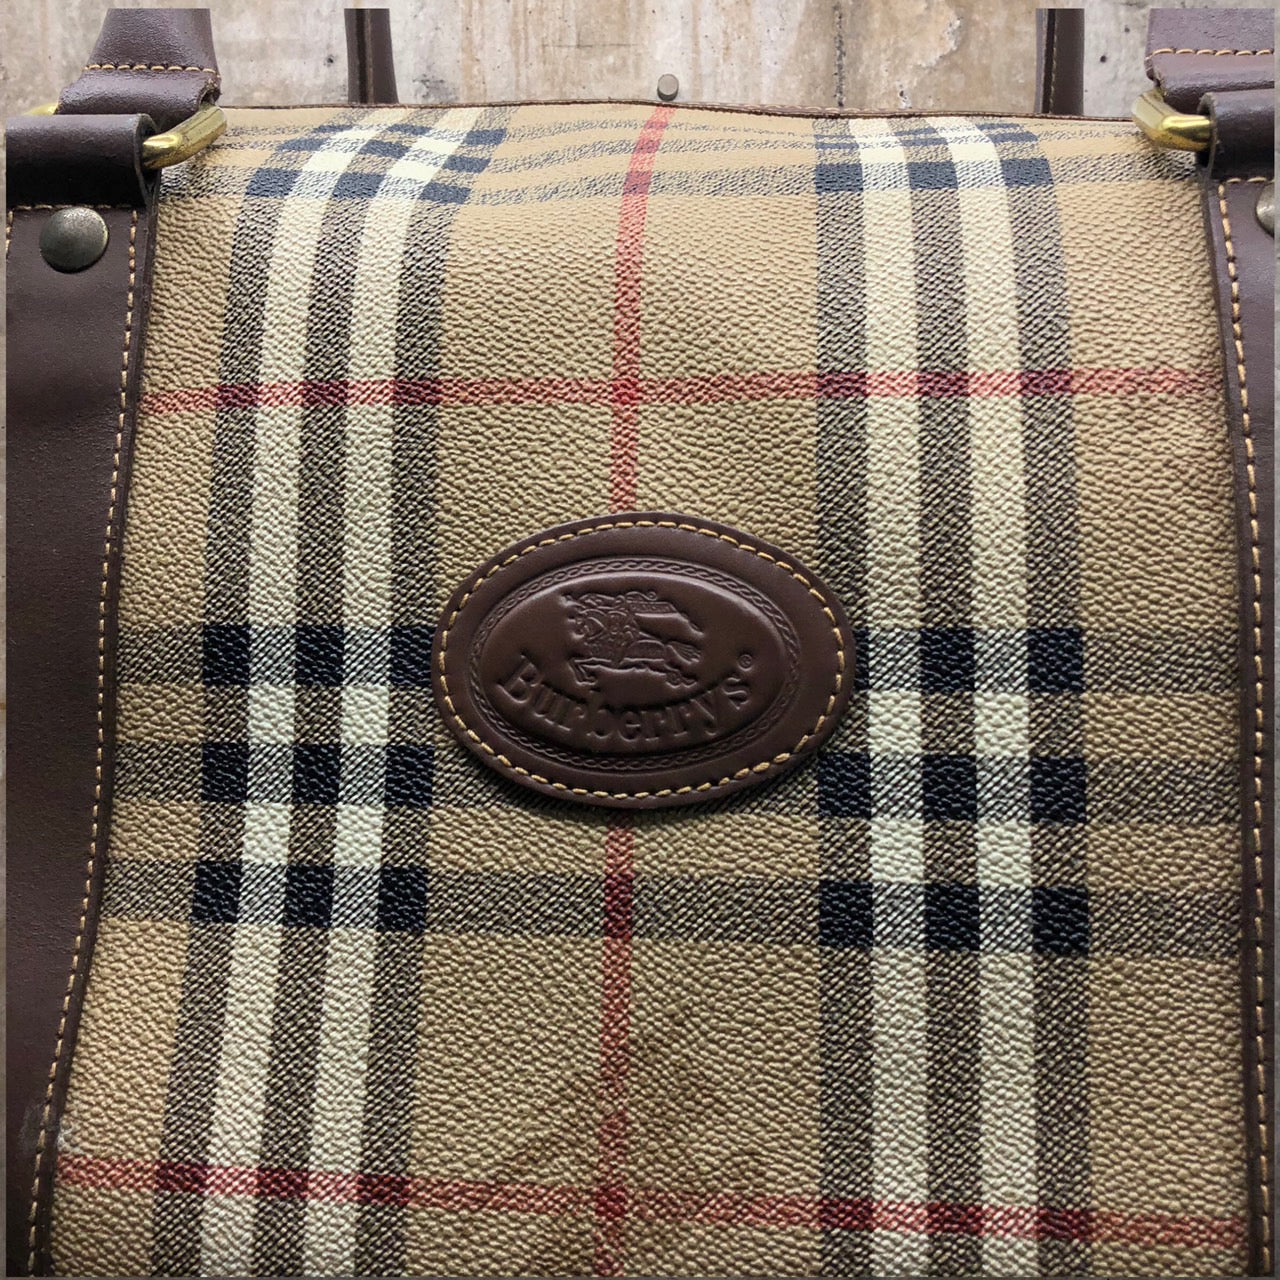 Burberrys(バーバリーズ) ロゴノヴァチェックボストンバッグ/旅行鞄 